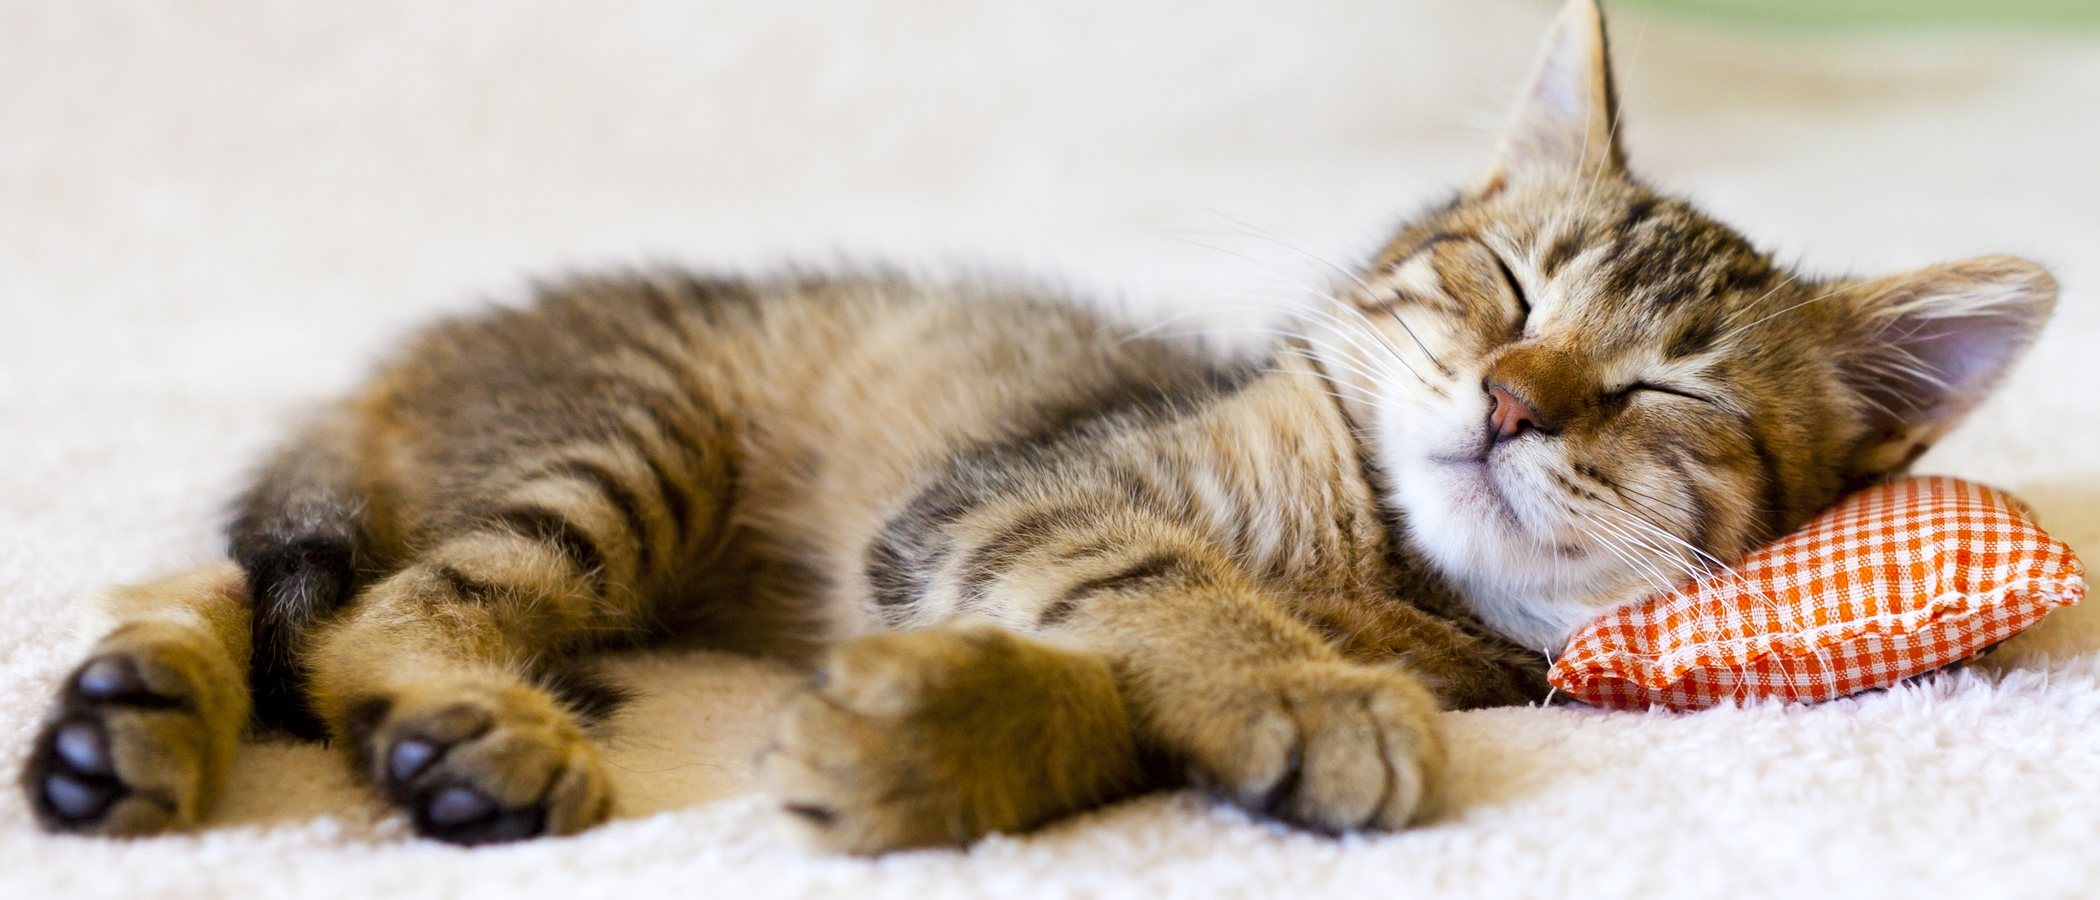 Síntomas de envenenamiento en gatos: primeros auxilios